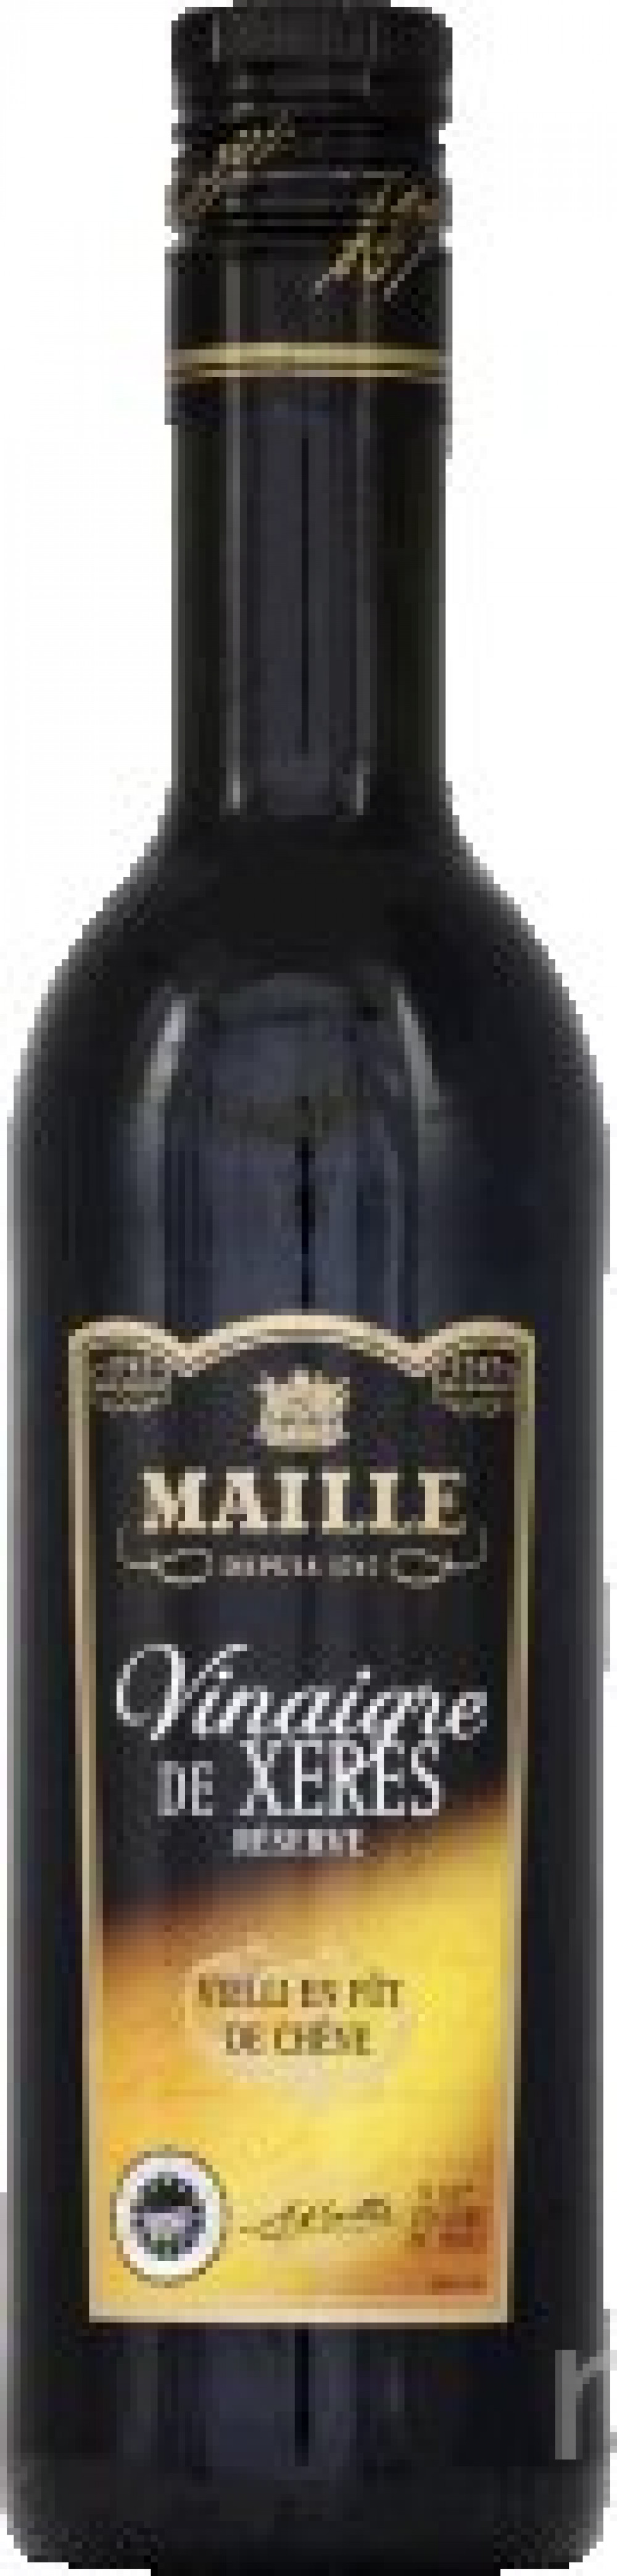 Maille - Vinaigre de Xérès 50 cl